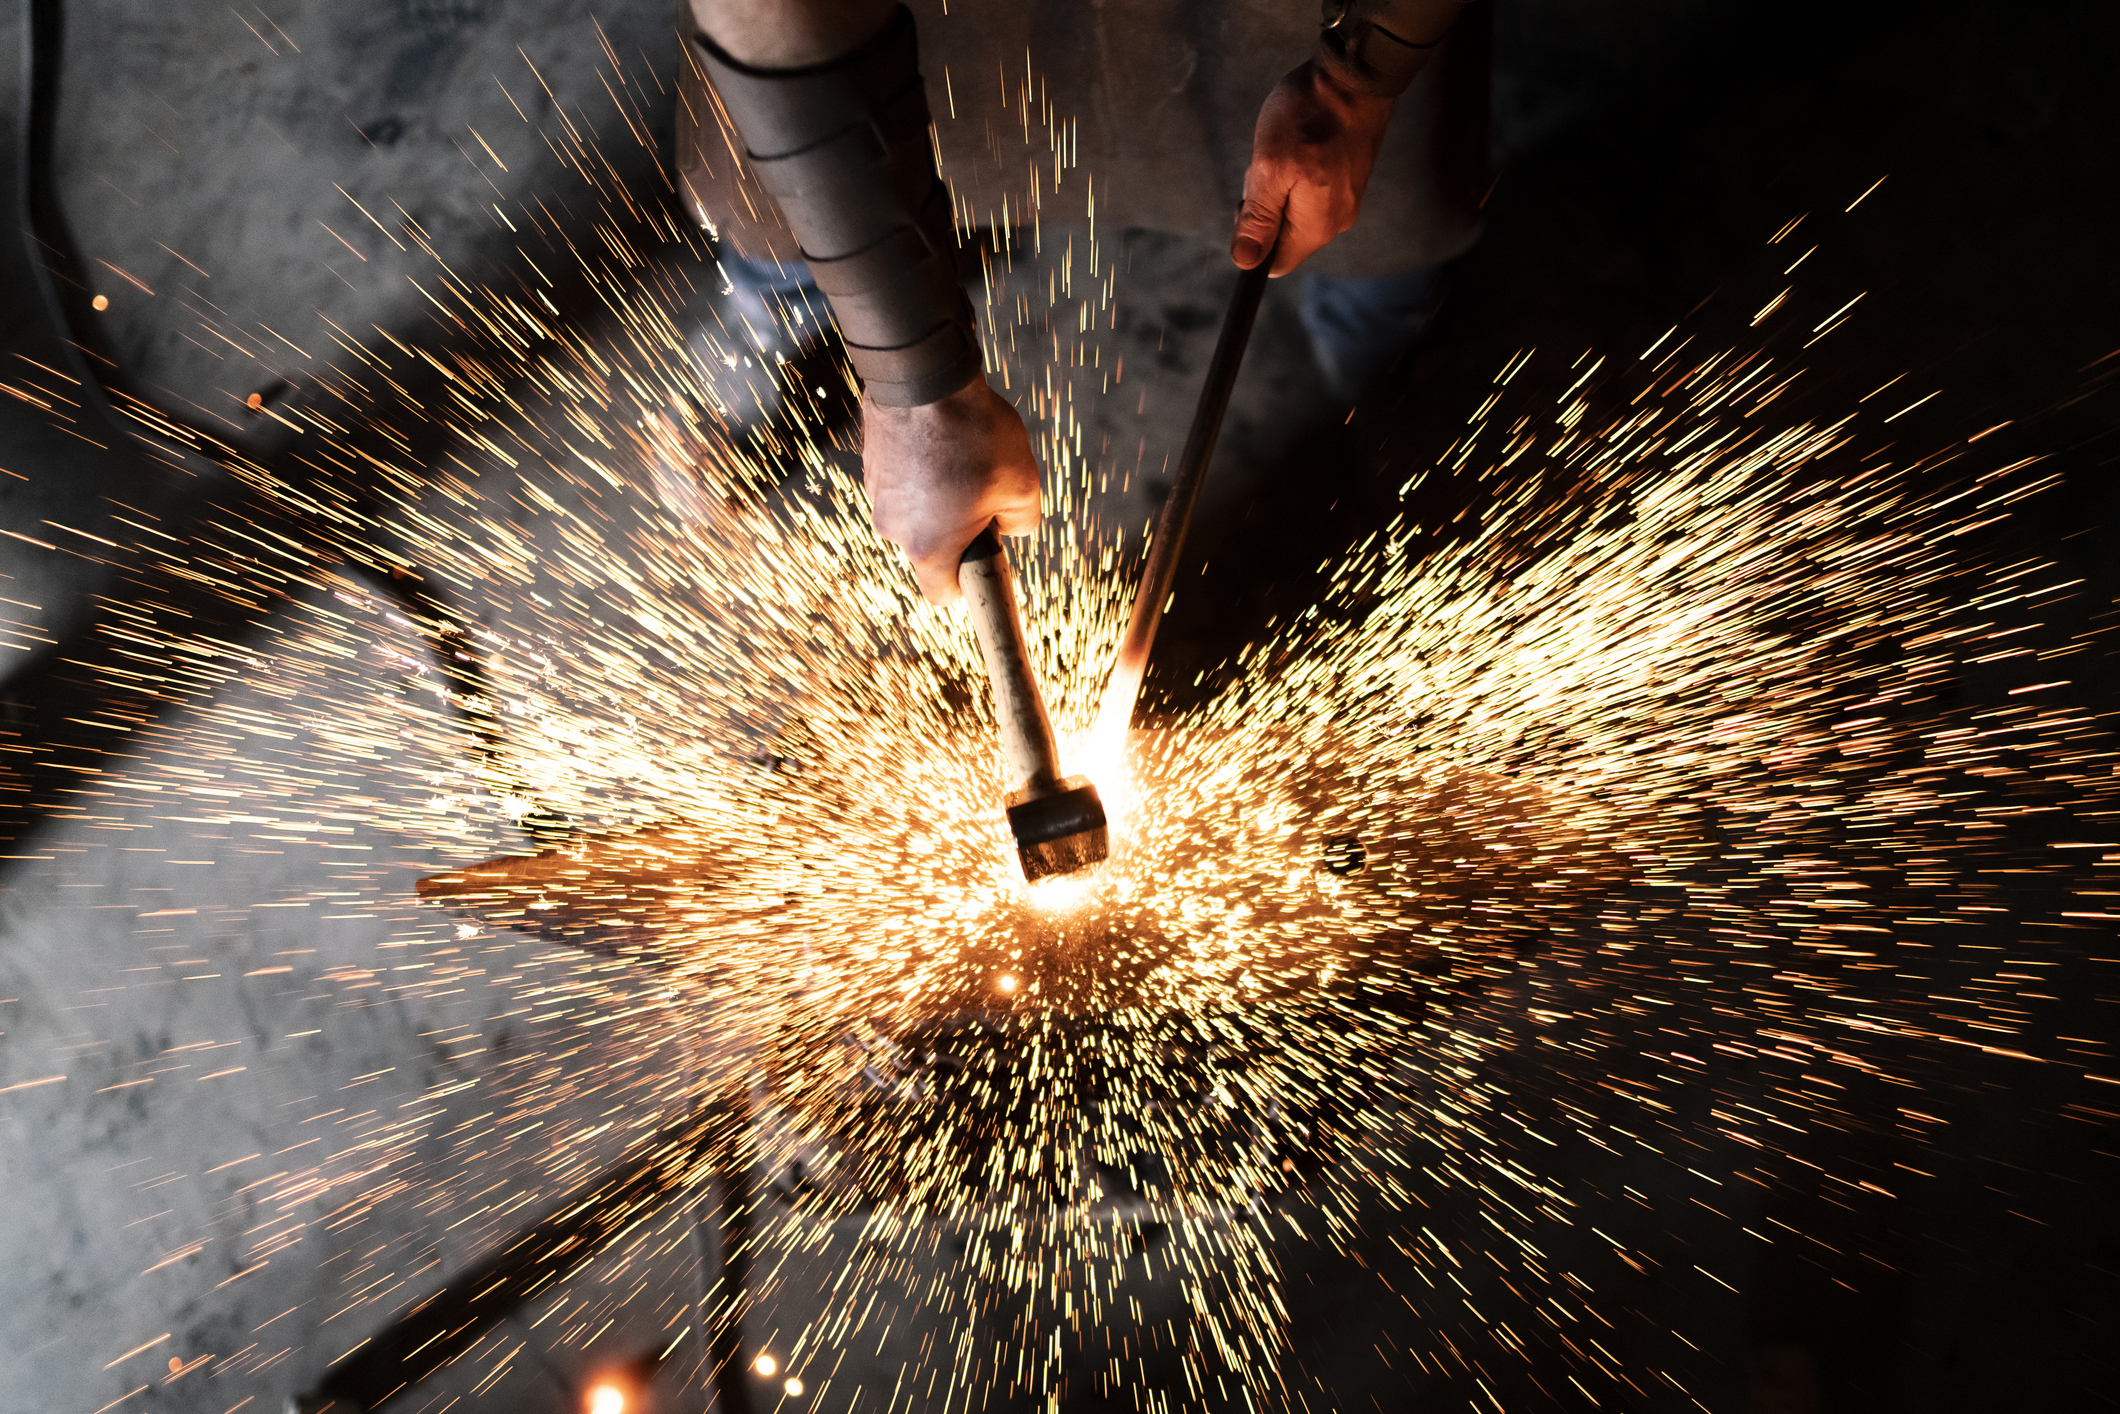 Seorang pandai besi yang terampil bekerja di bengkelnya dengan palu besi bersuhu tinggi di landasannya untuk membuat karya baru dengan menciptakan banyak percikan api dalam gelap.  Startup perangkat keras